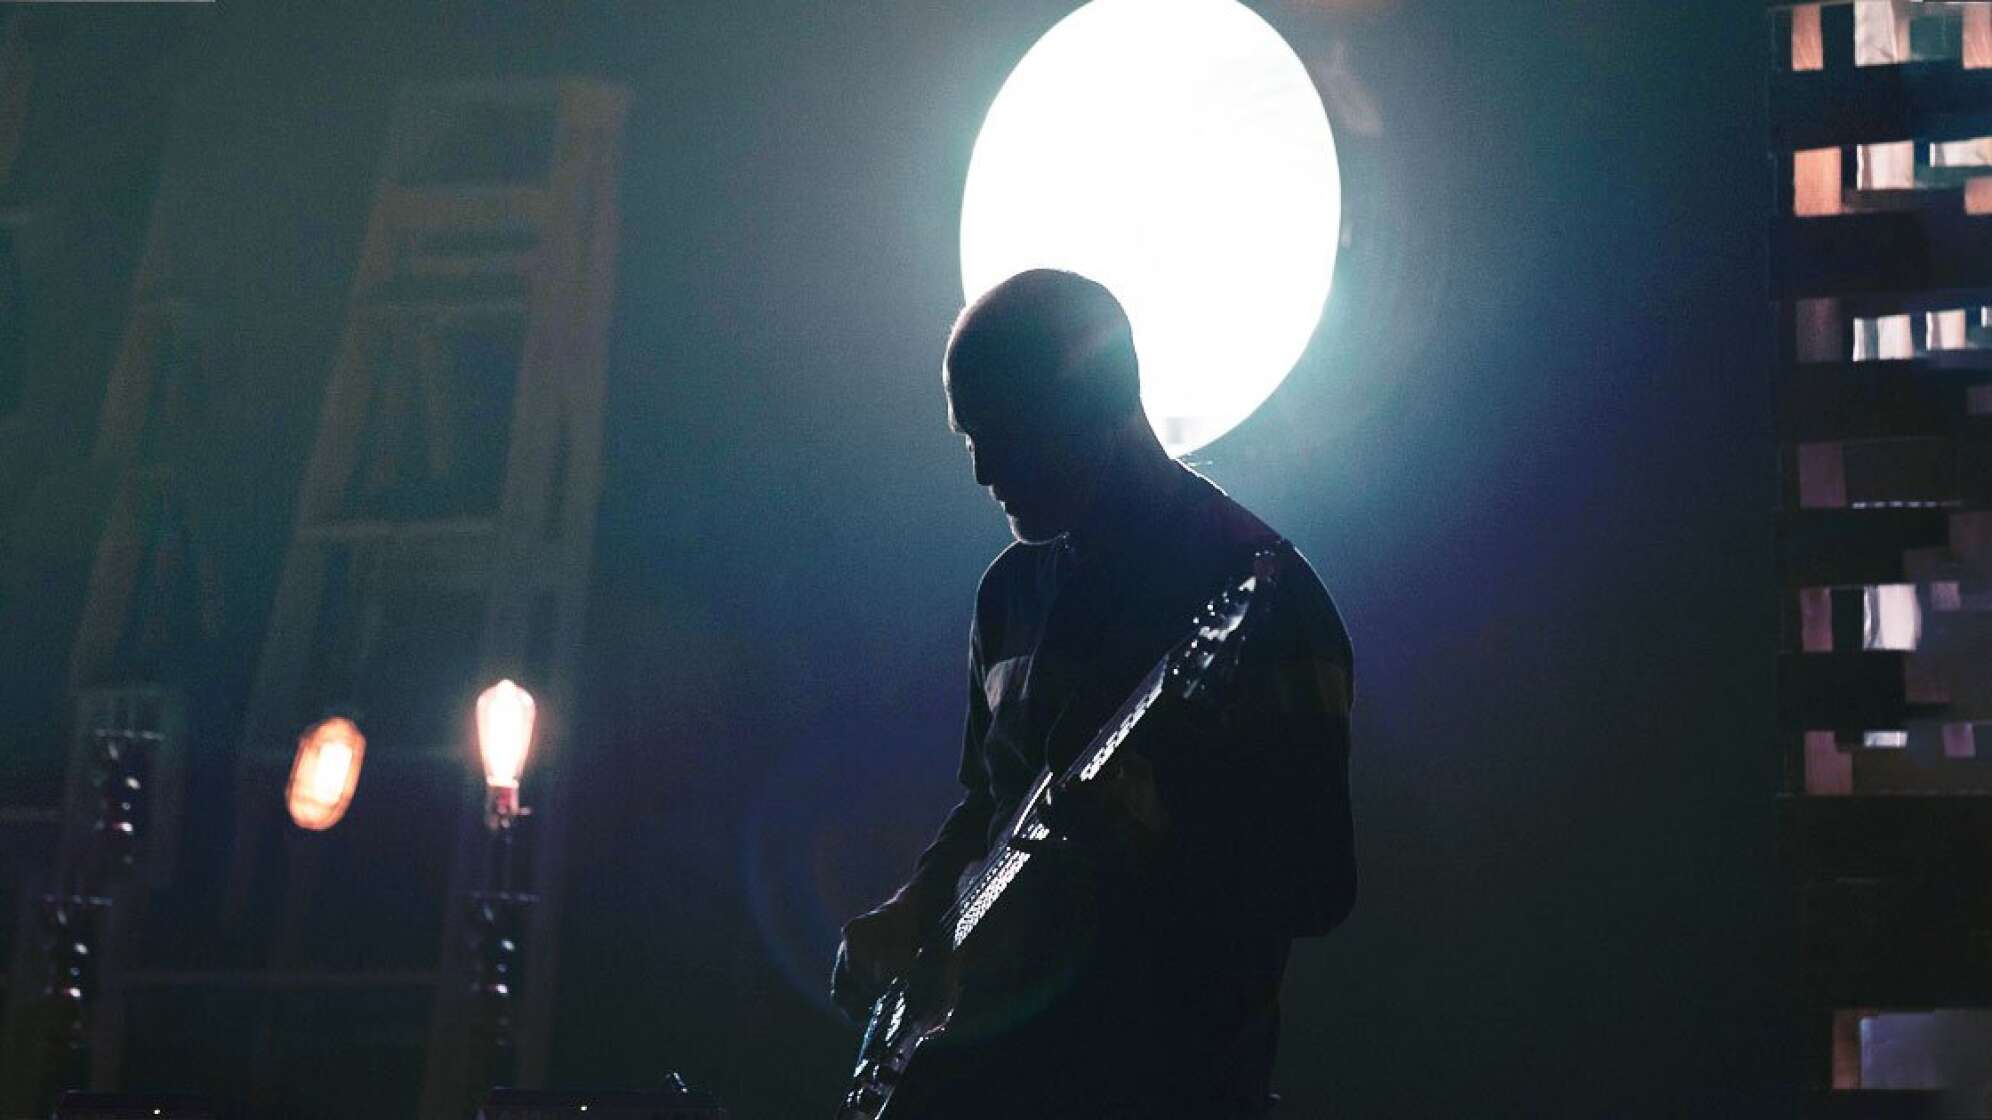 Gitarrist vor Scheinwerferlicht